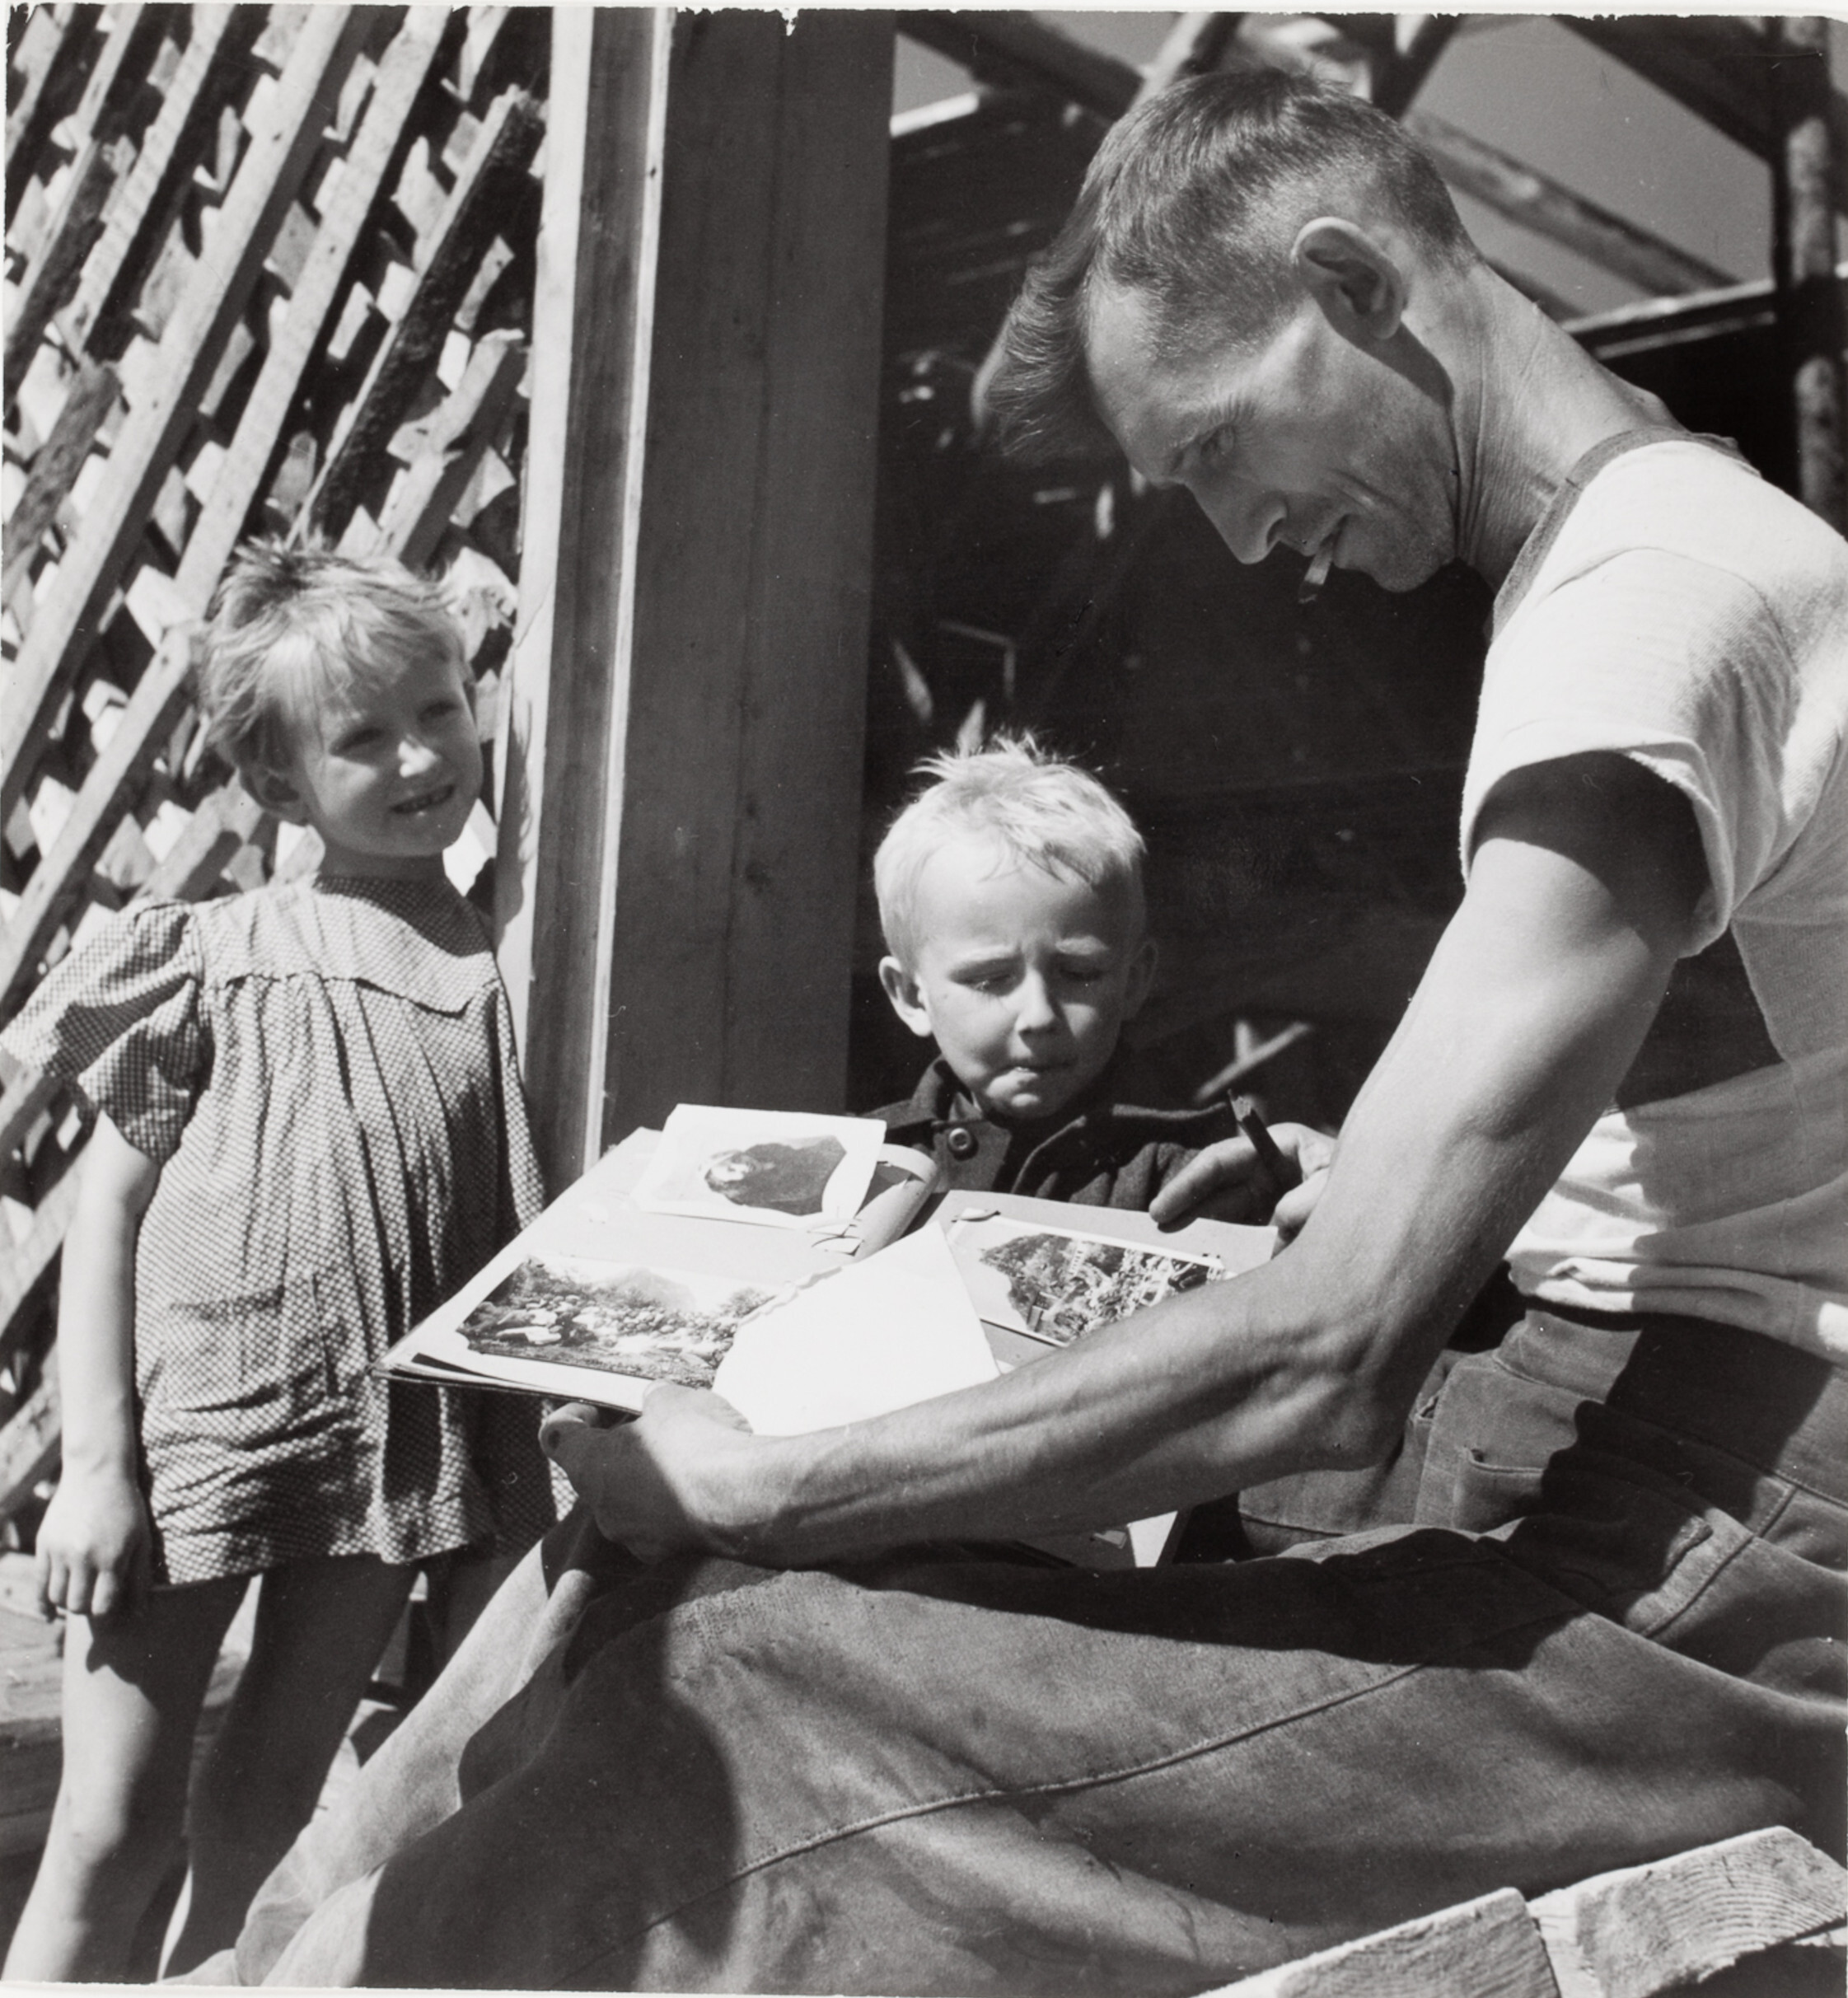 Мужчина рассматривает фотоальбом в компании детей, Сталинград, СССР, 1947 год. Фотограф Роберт Капа